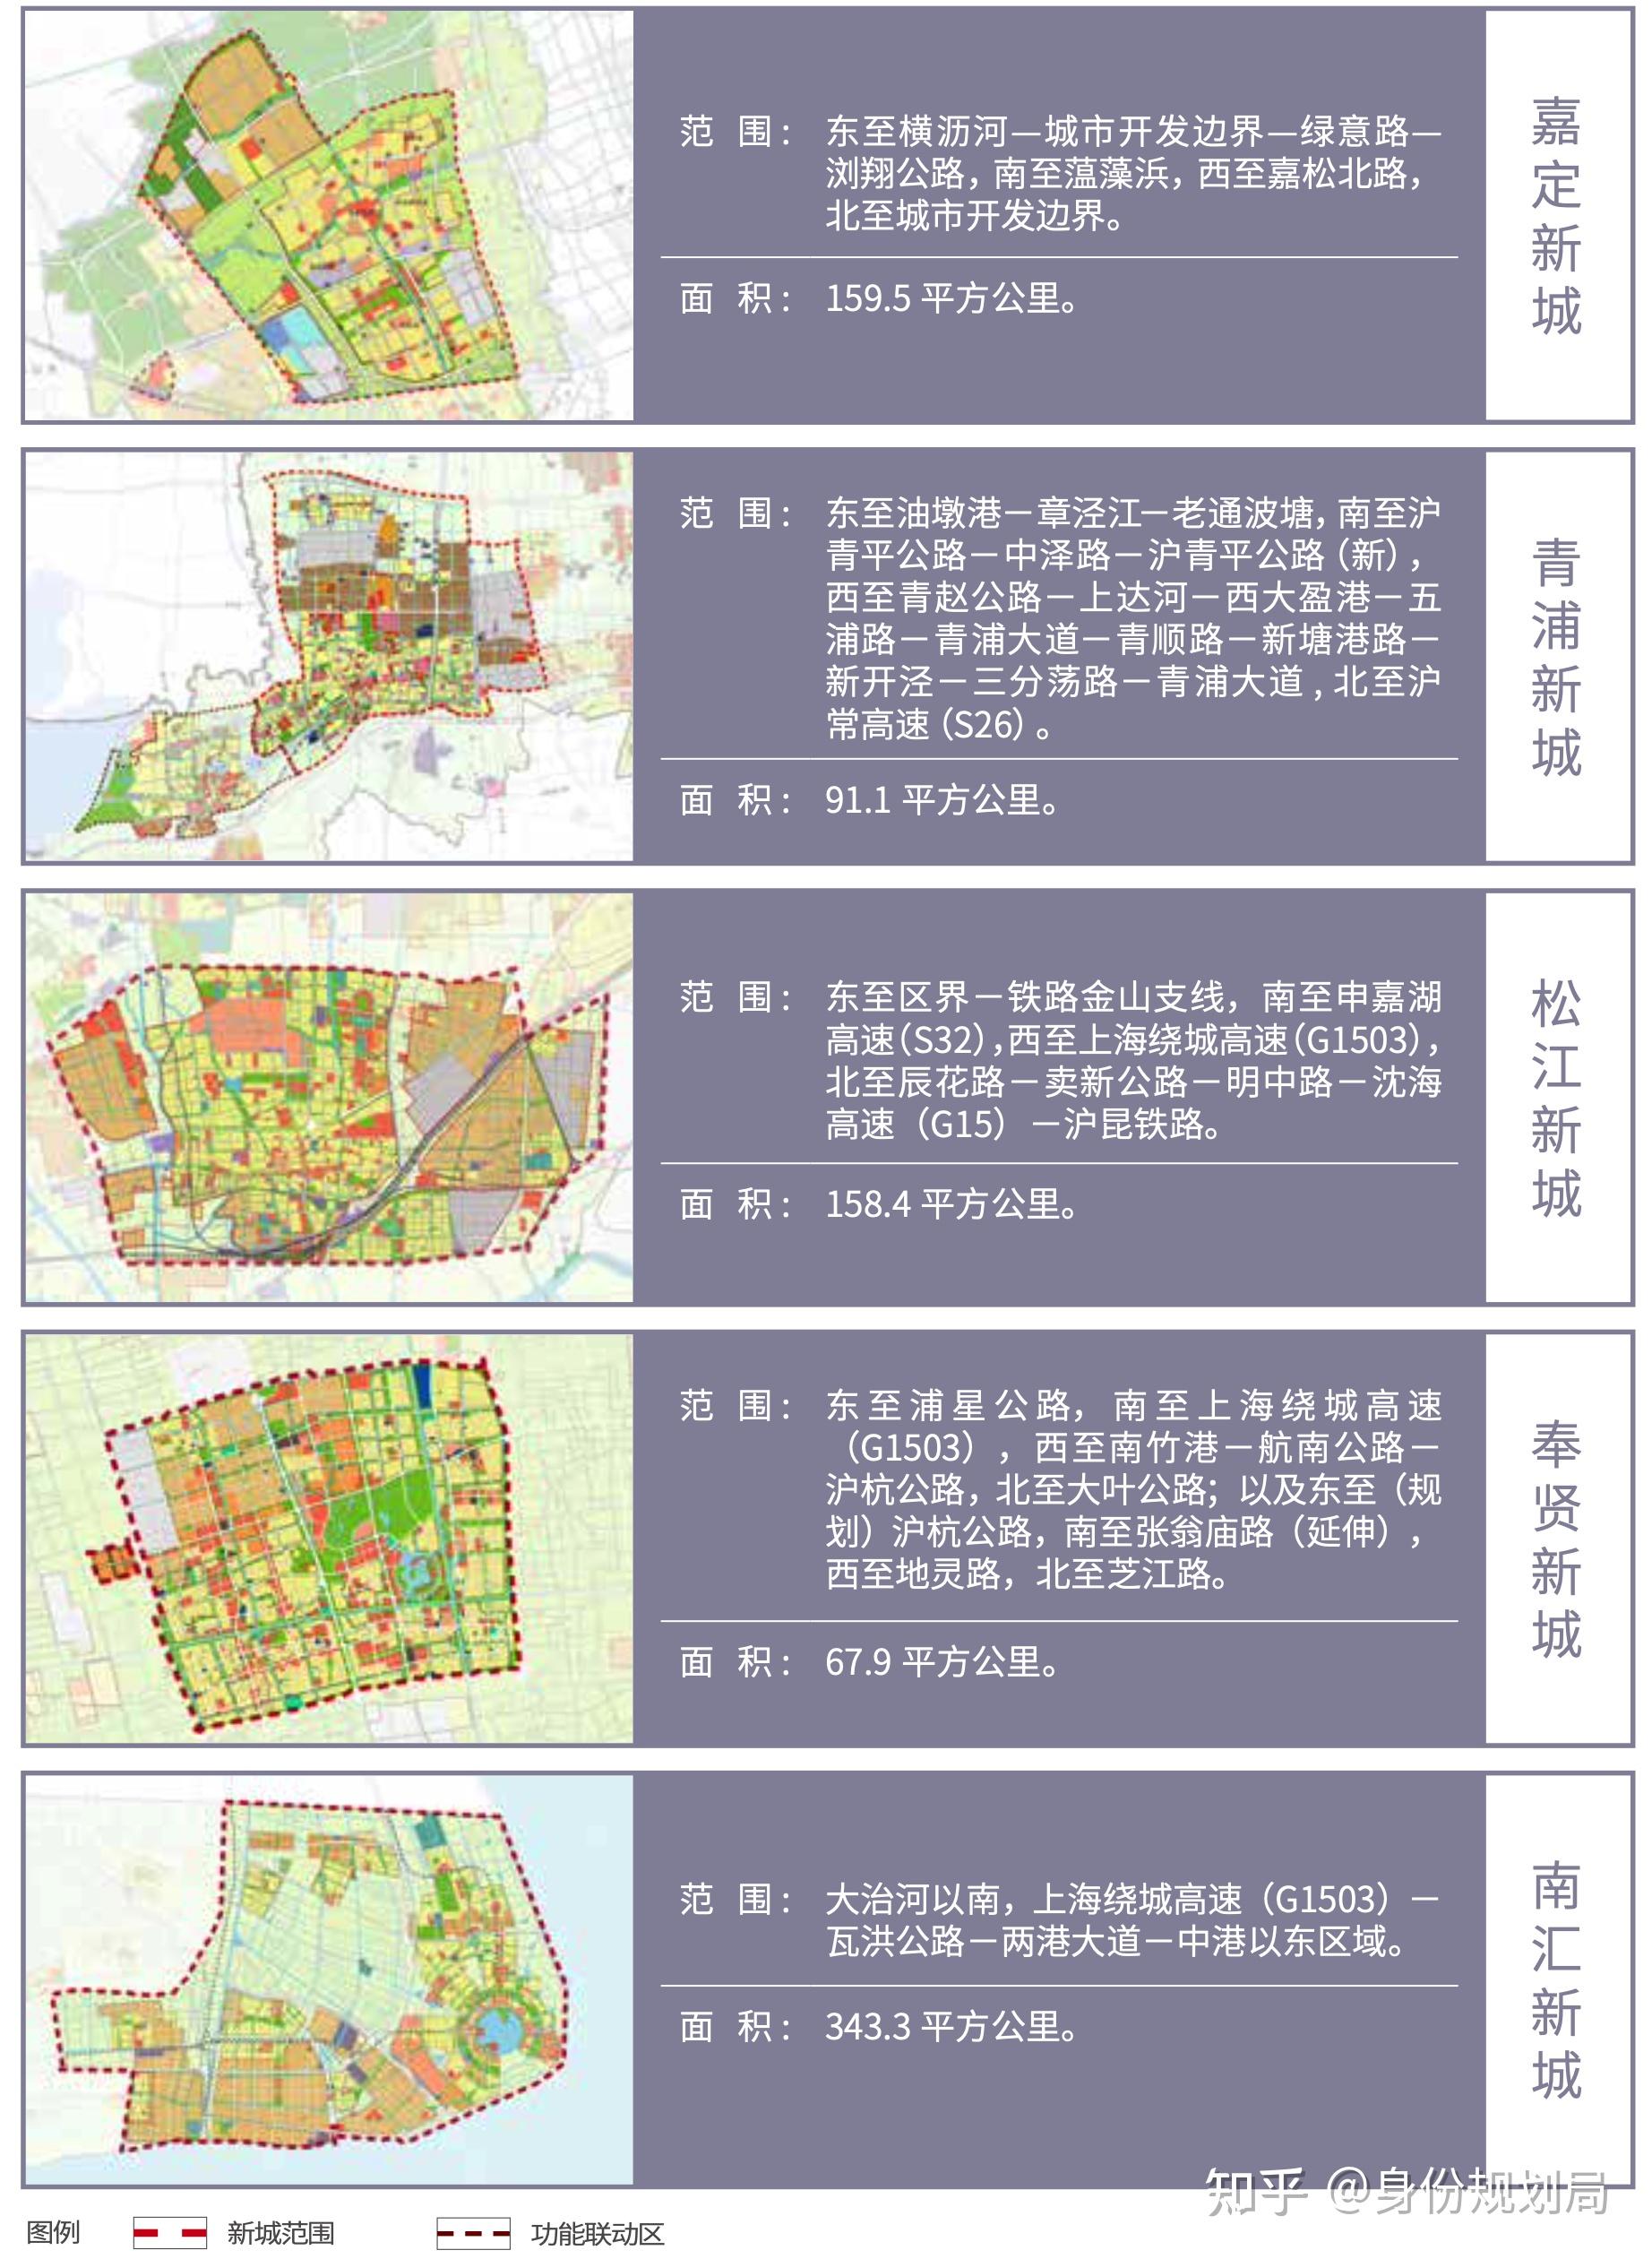 张江科学城的规划范围从95平方公里扩容到了220平方公里,地理范围扩大